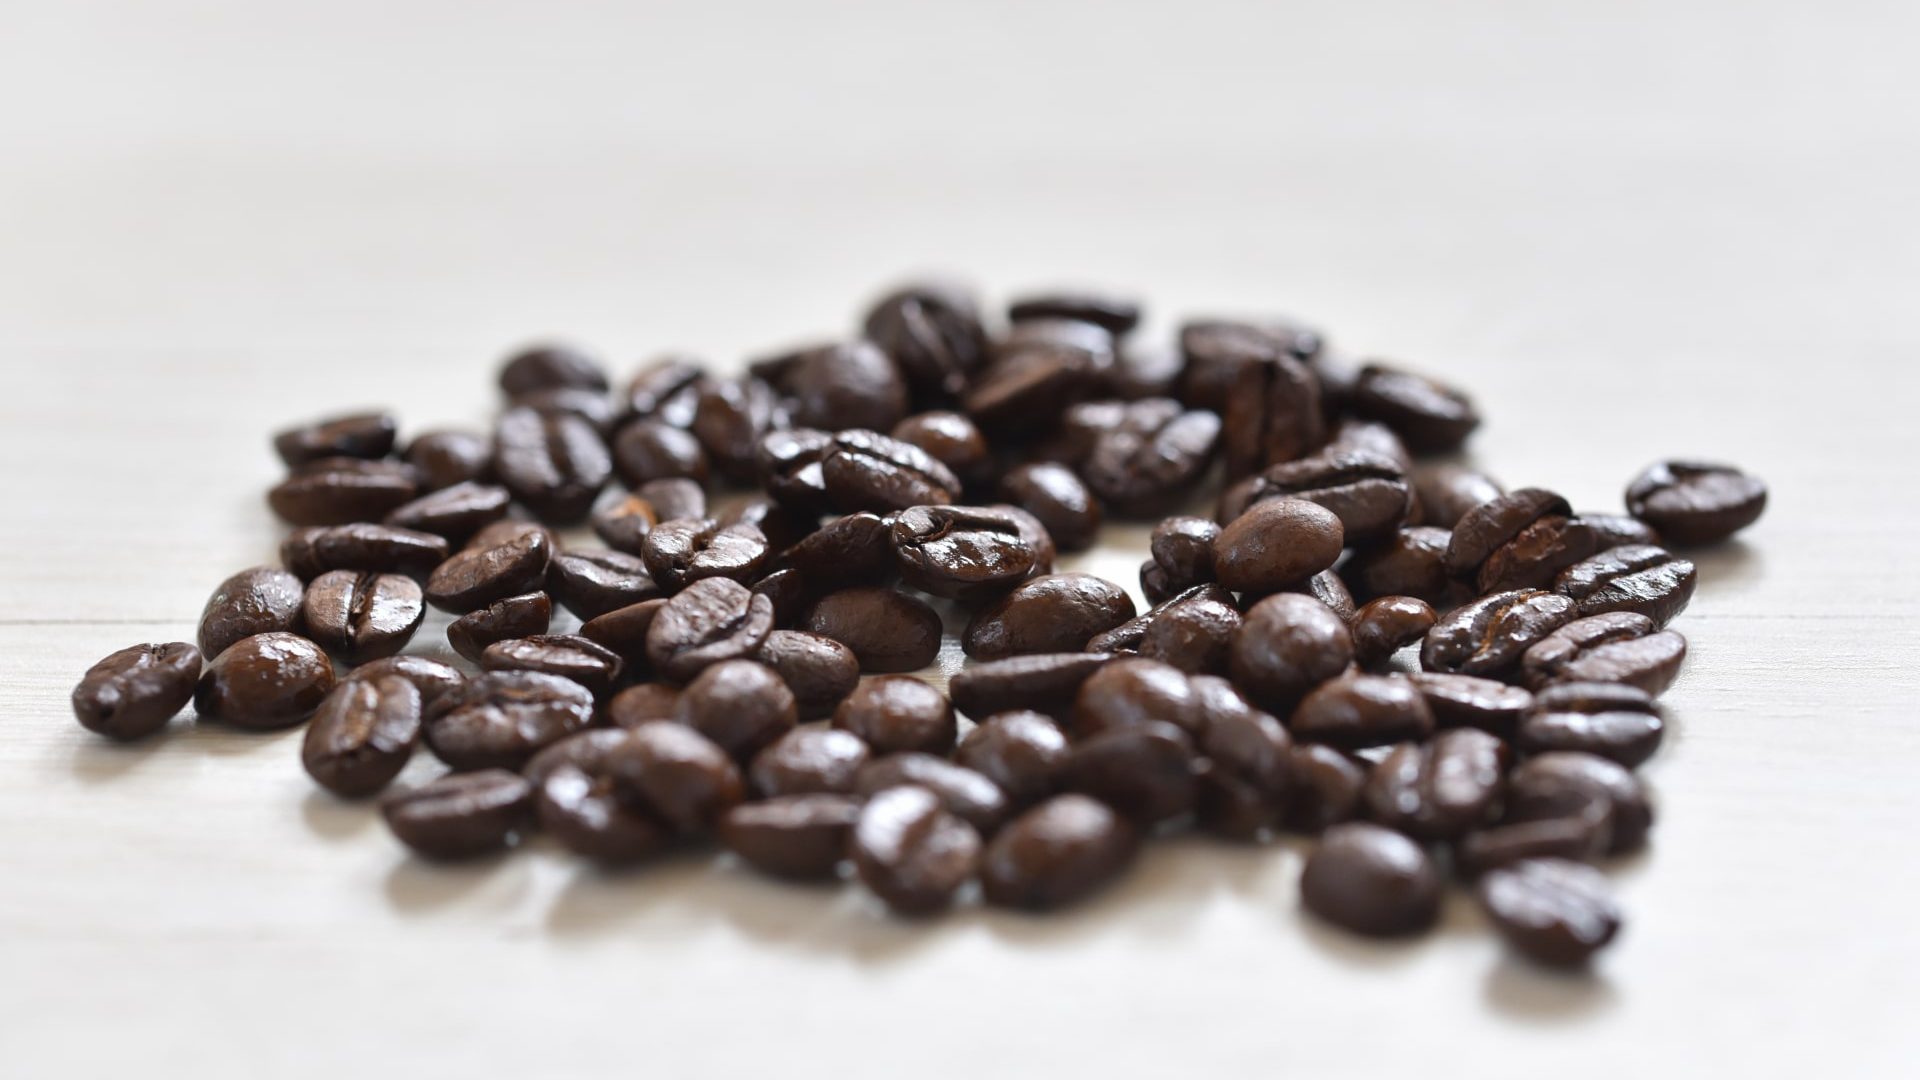 散らばったコーヒー豆